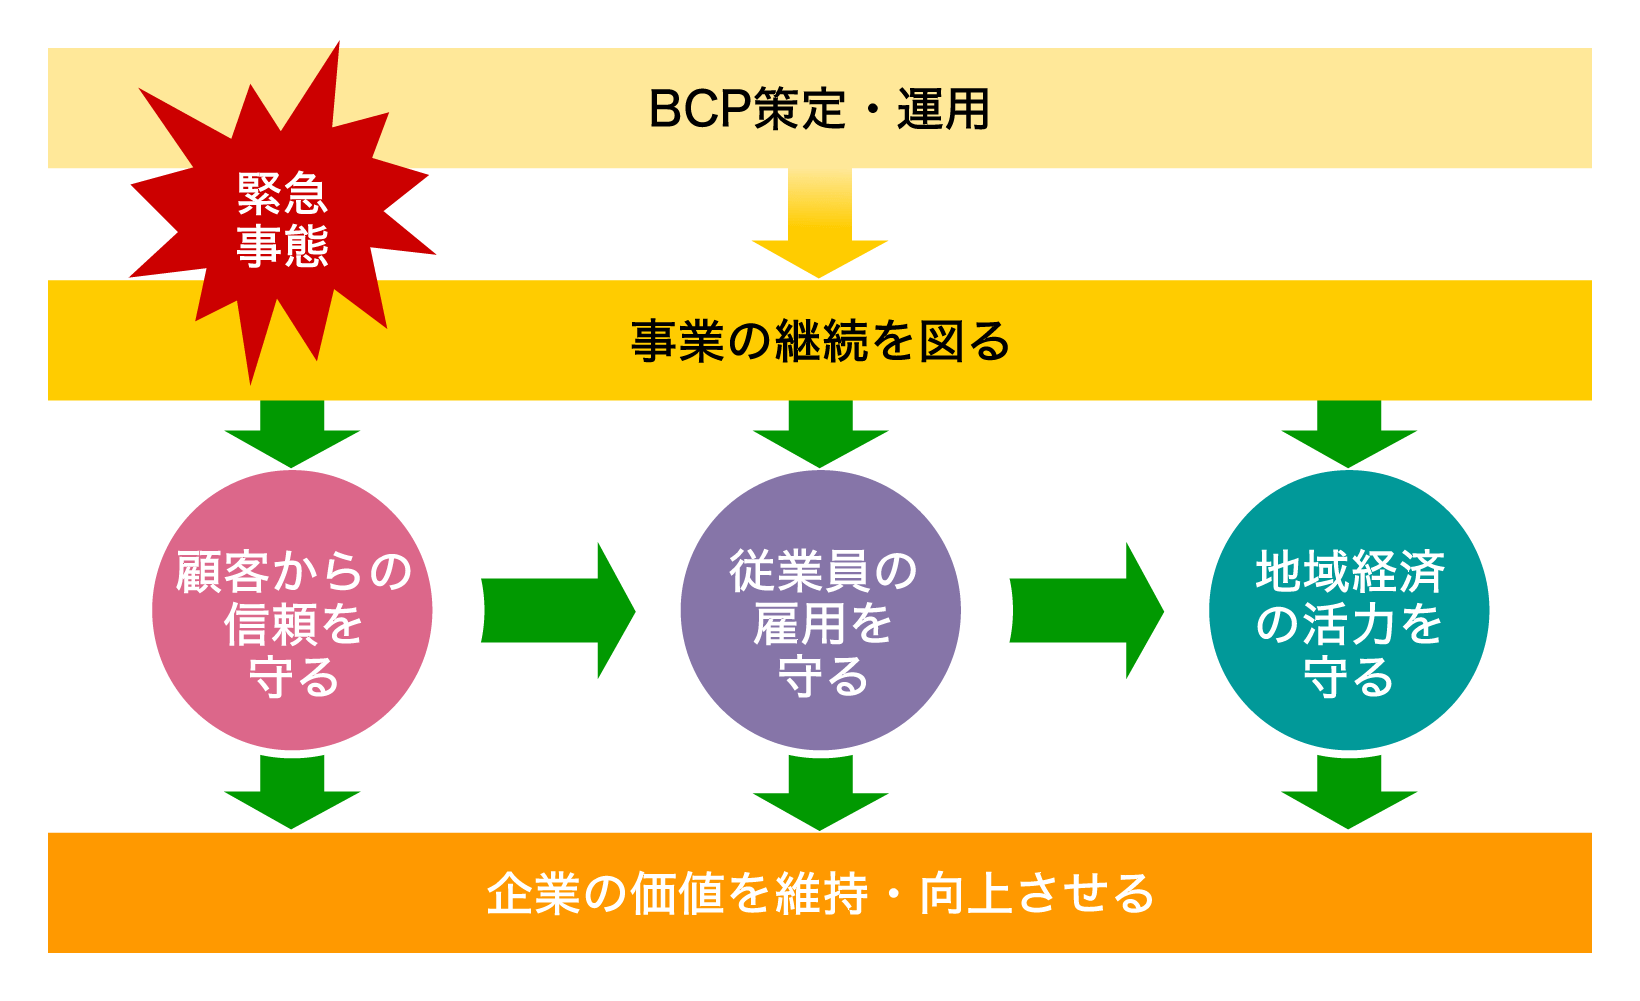 BCP策定・運用の目的